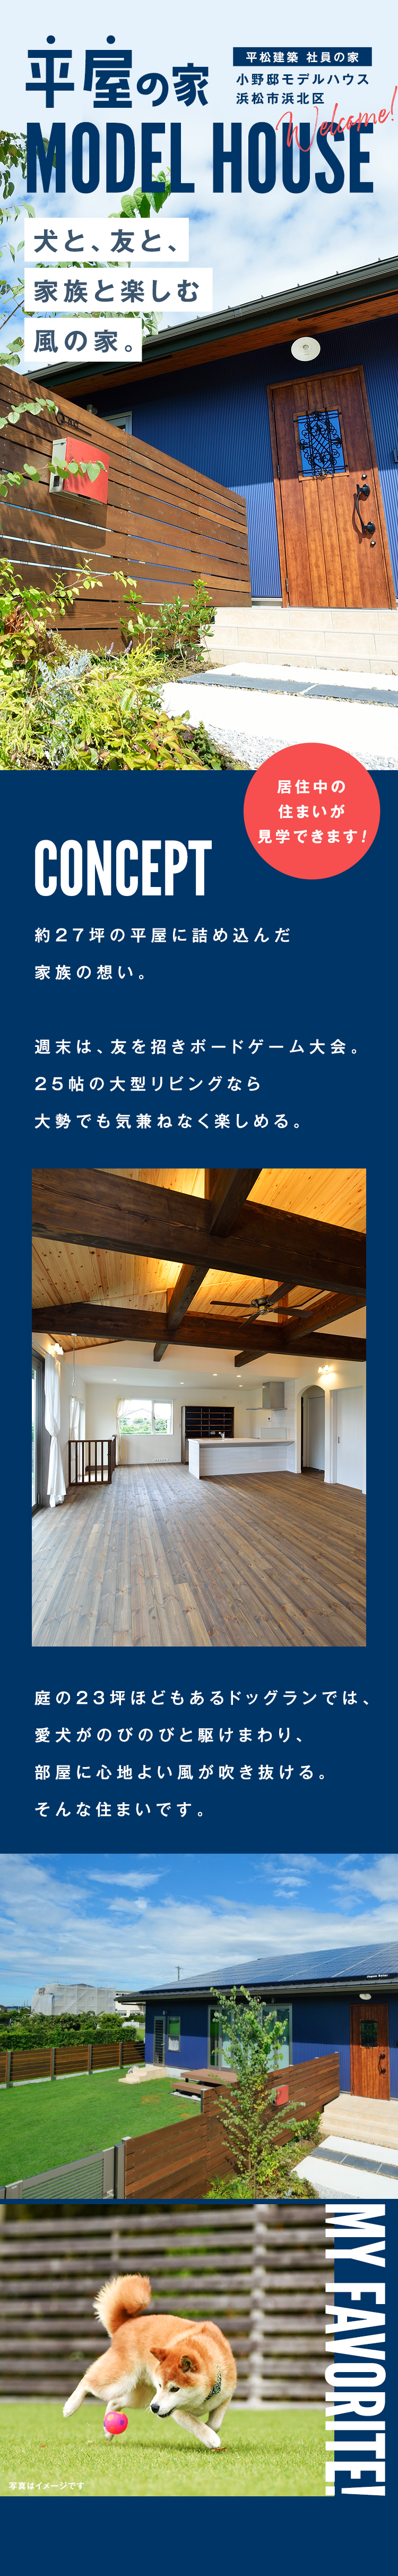 平松建築社員の小野邸を用いた平屋モデルハウス。犬と、共と家族と楽しむ風の家。